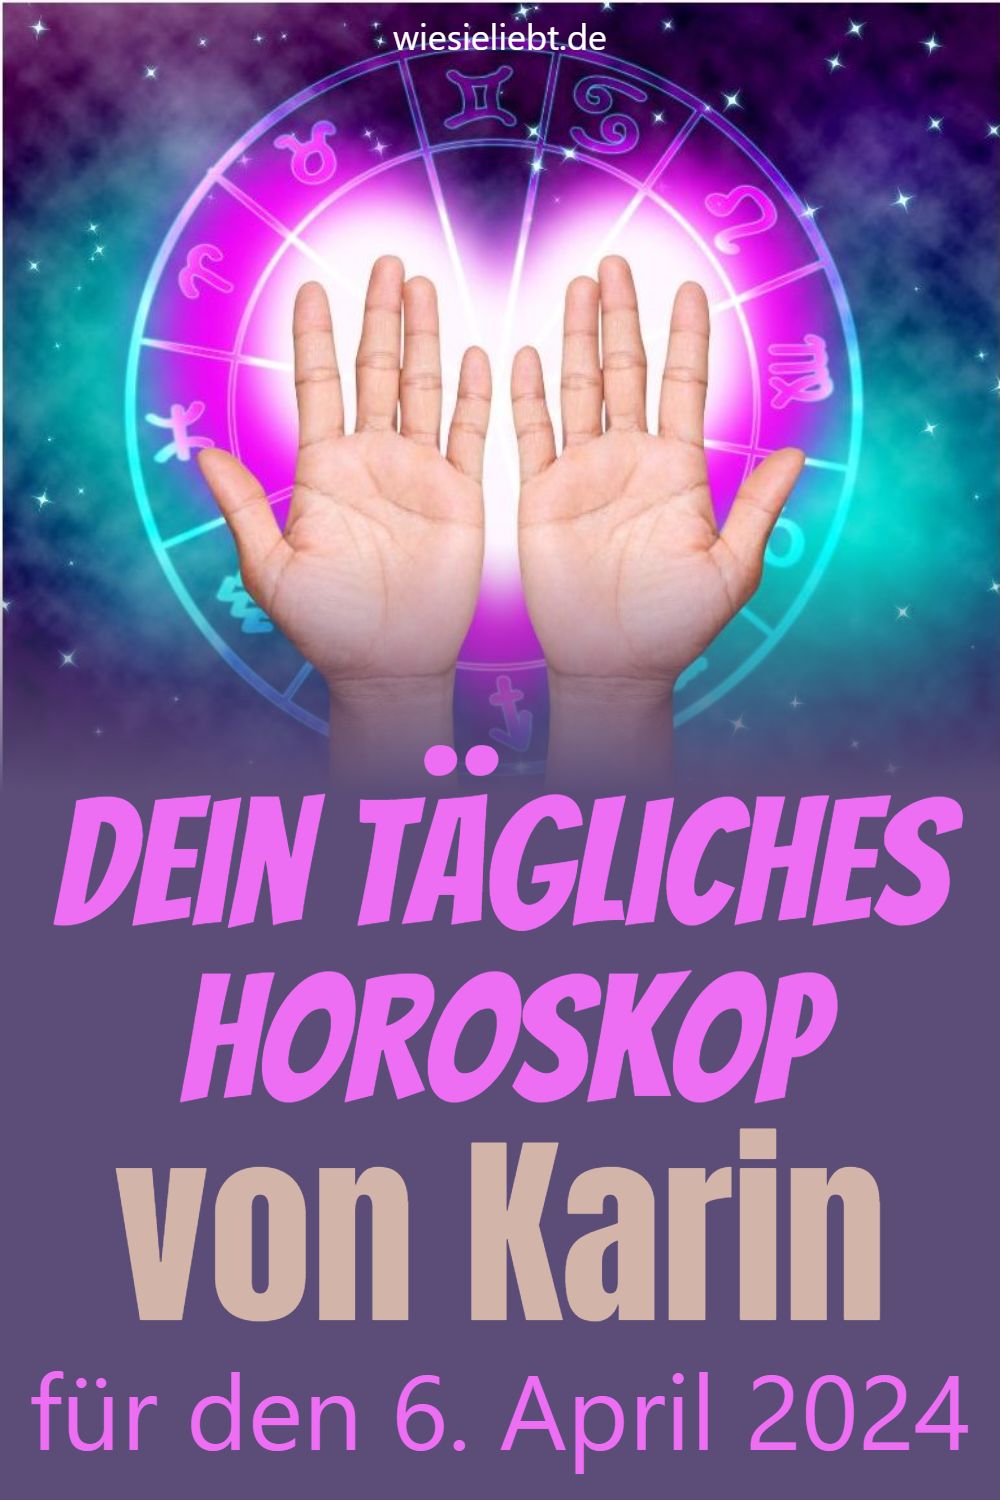 Dein tägliches Horoskop von Karin für den 6. April 2024